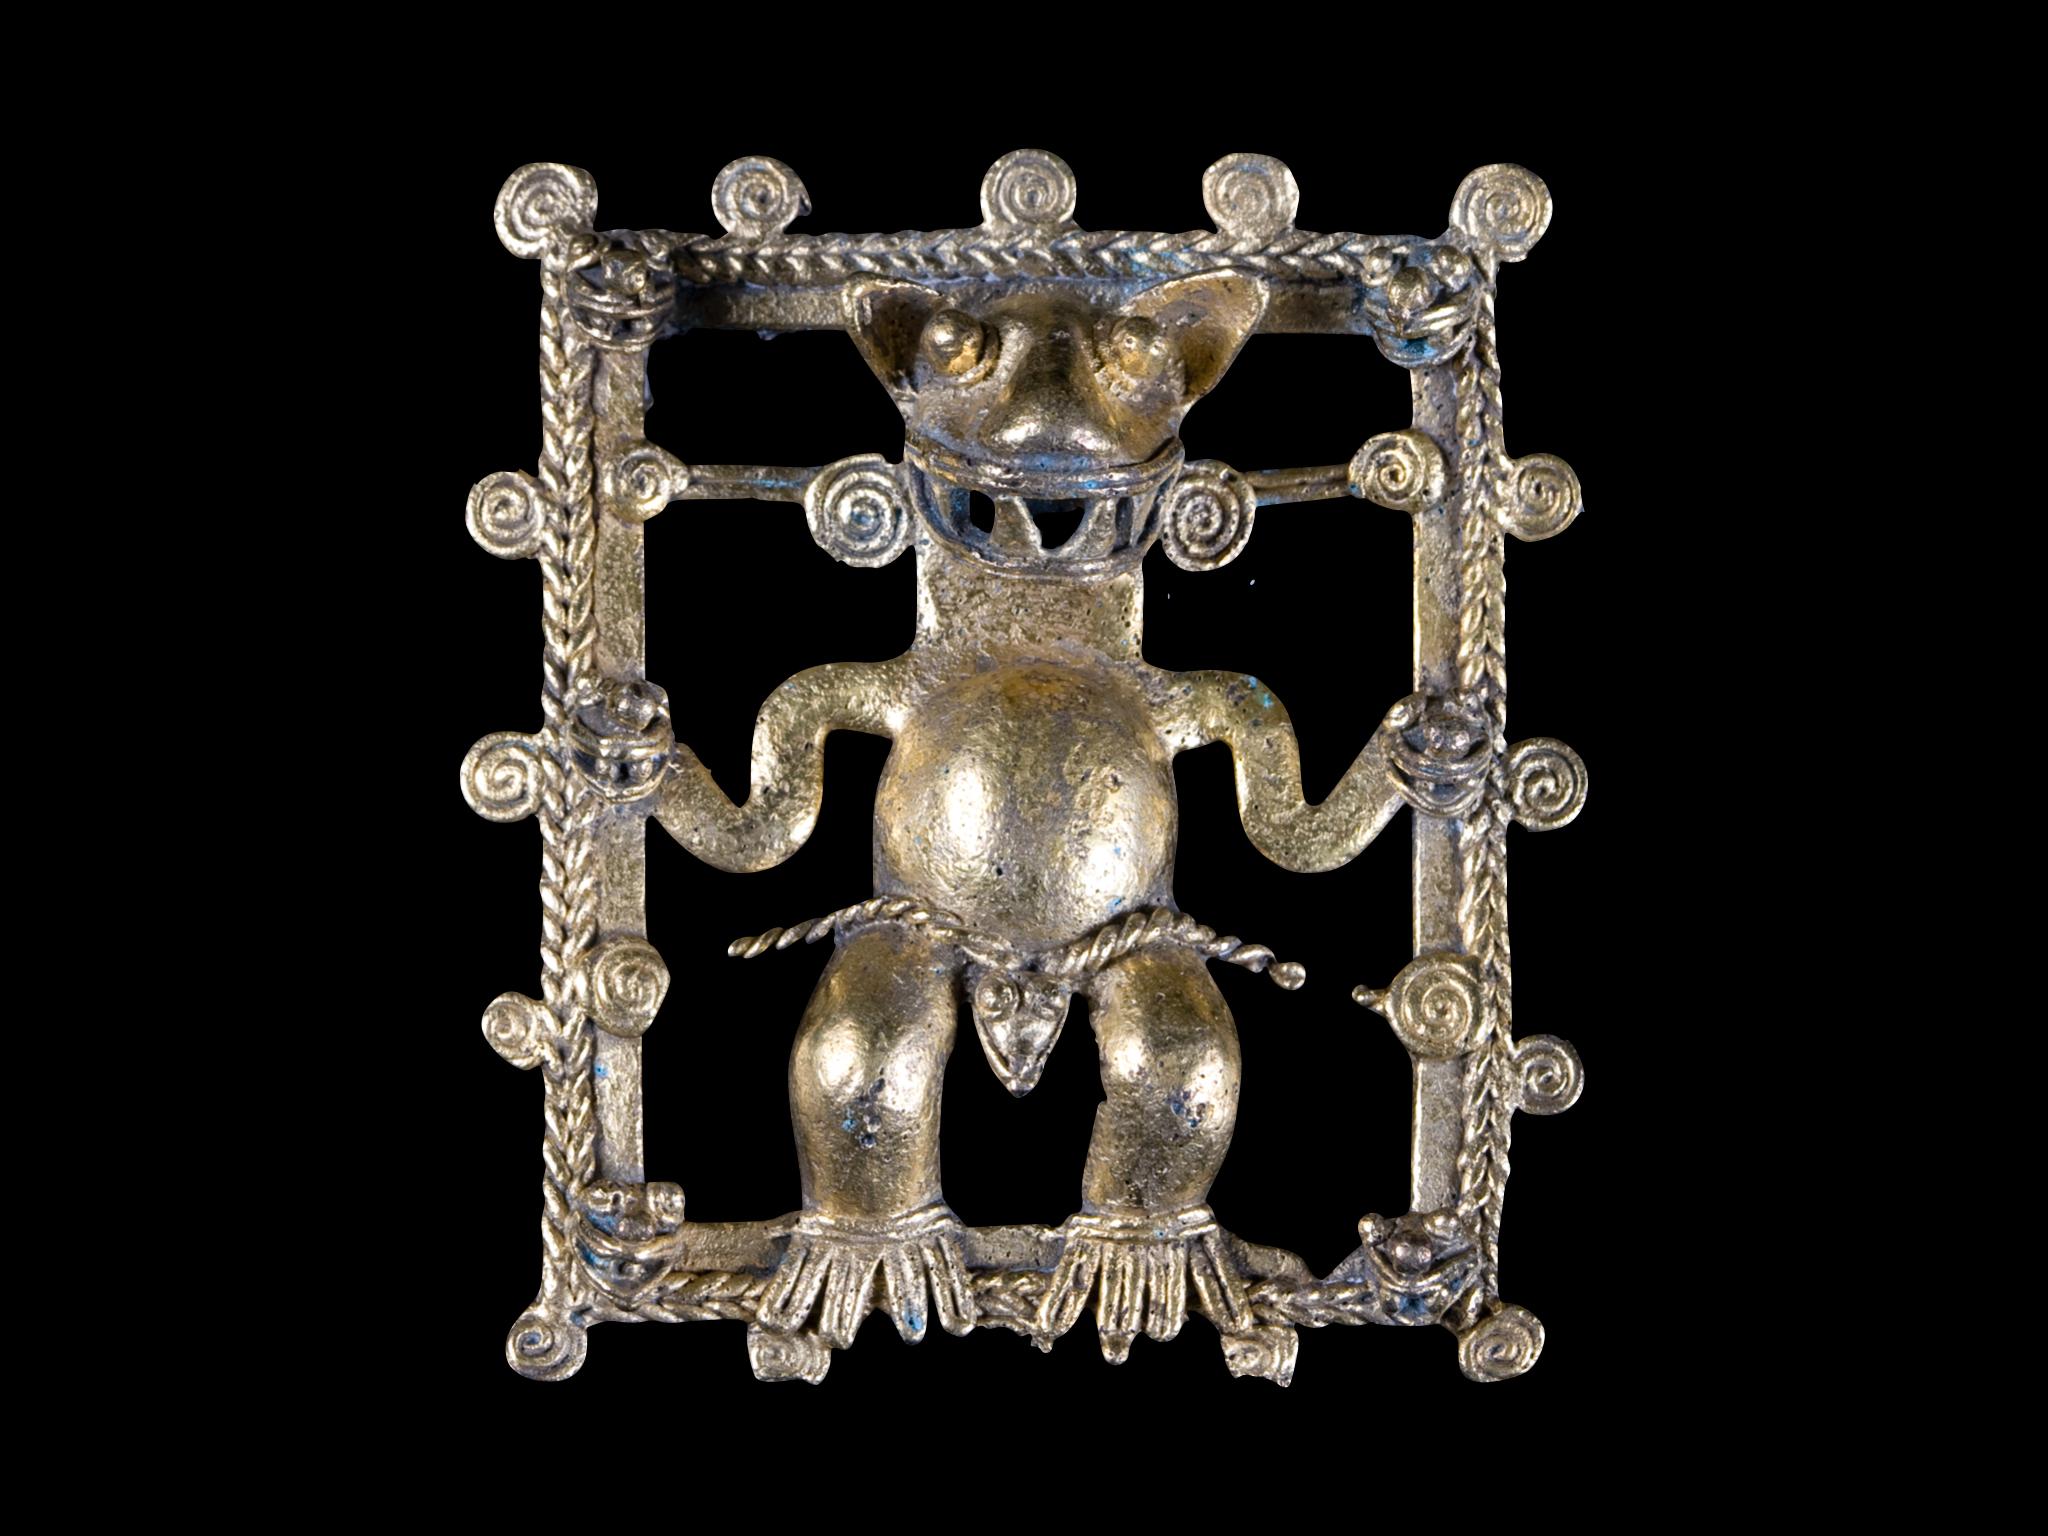 Südliches Costa Rica oder westliches Panama, ca. 800 bis 1500 n. Chr. Ein sehr schönes Beispiel für die Goldschmiedekunst in der Region Veraguas-Chiriqui-Diquis. Anhänger im Carbonera-Stil eines übernatürlichen Wesens, eines zusammengesetzten